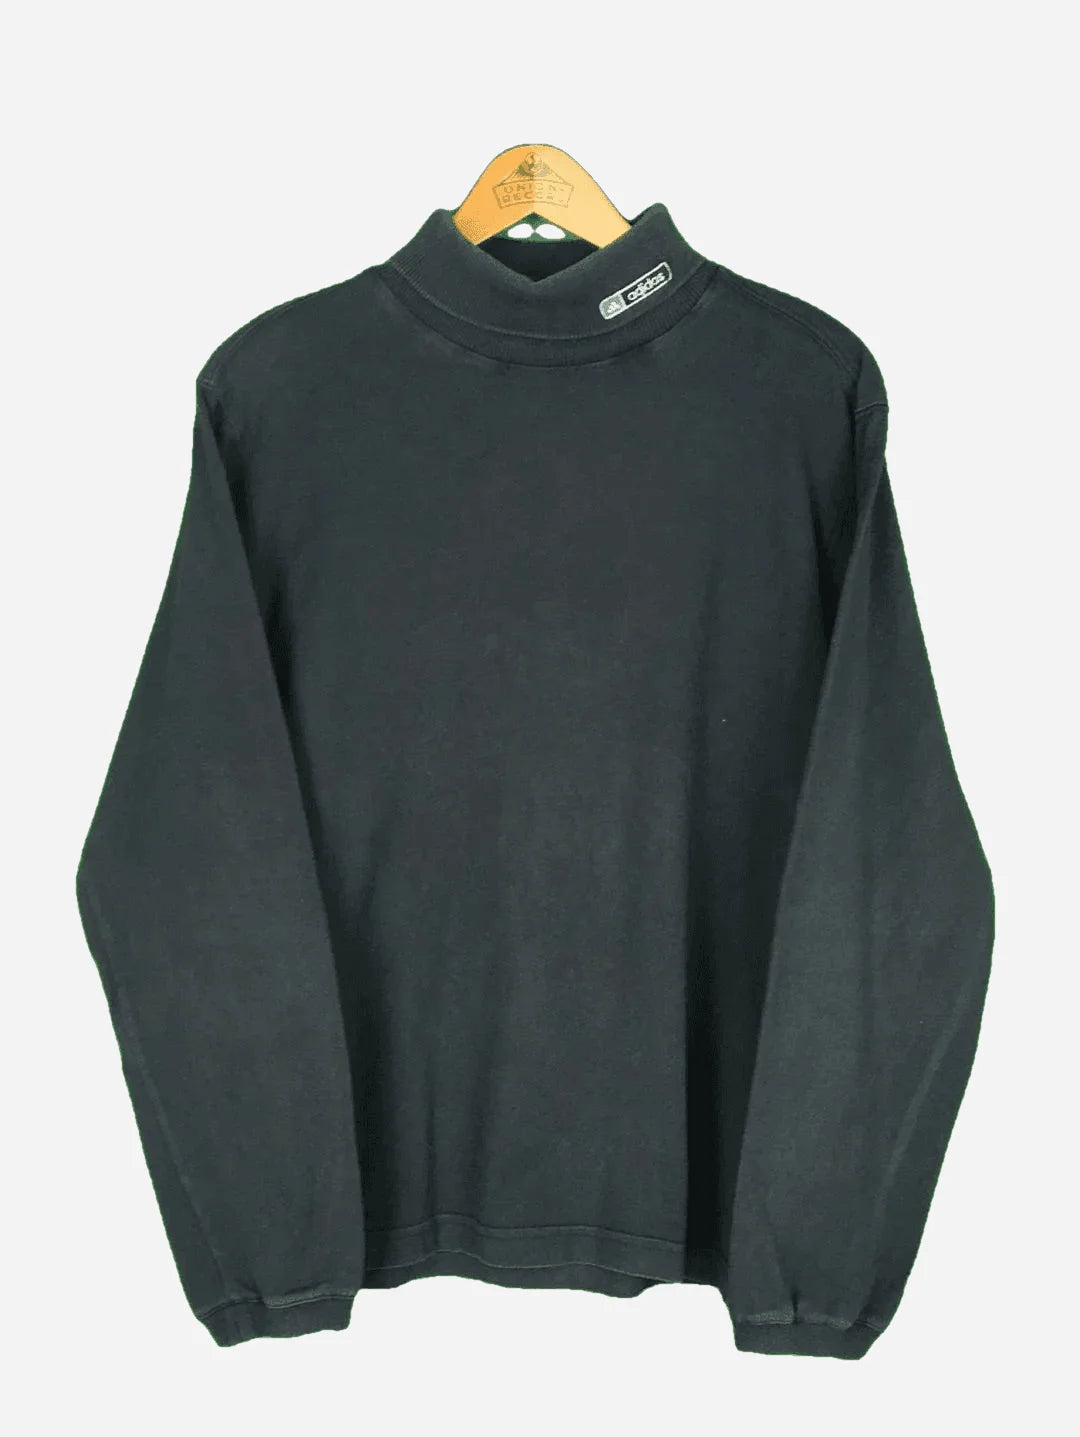 Adidas Rollkragen Sweater (M)